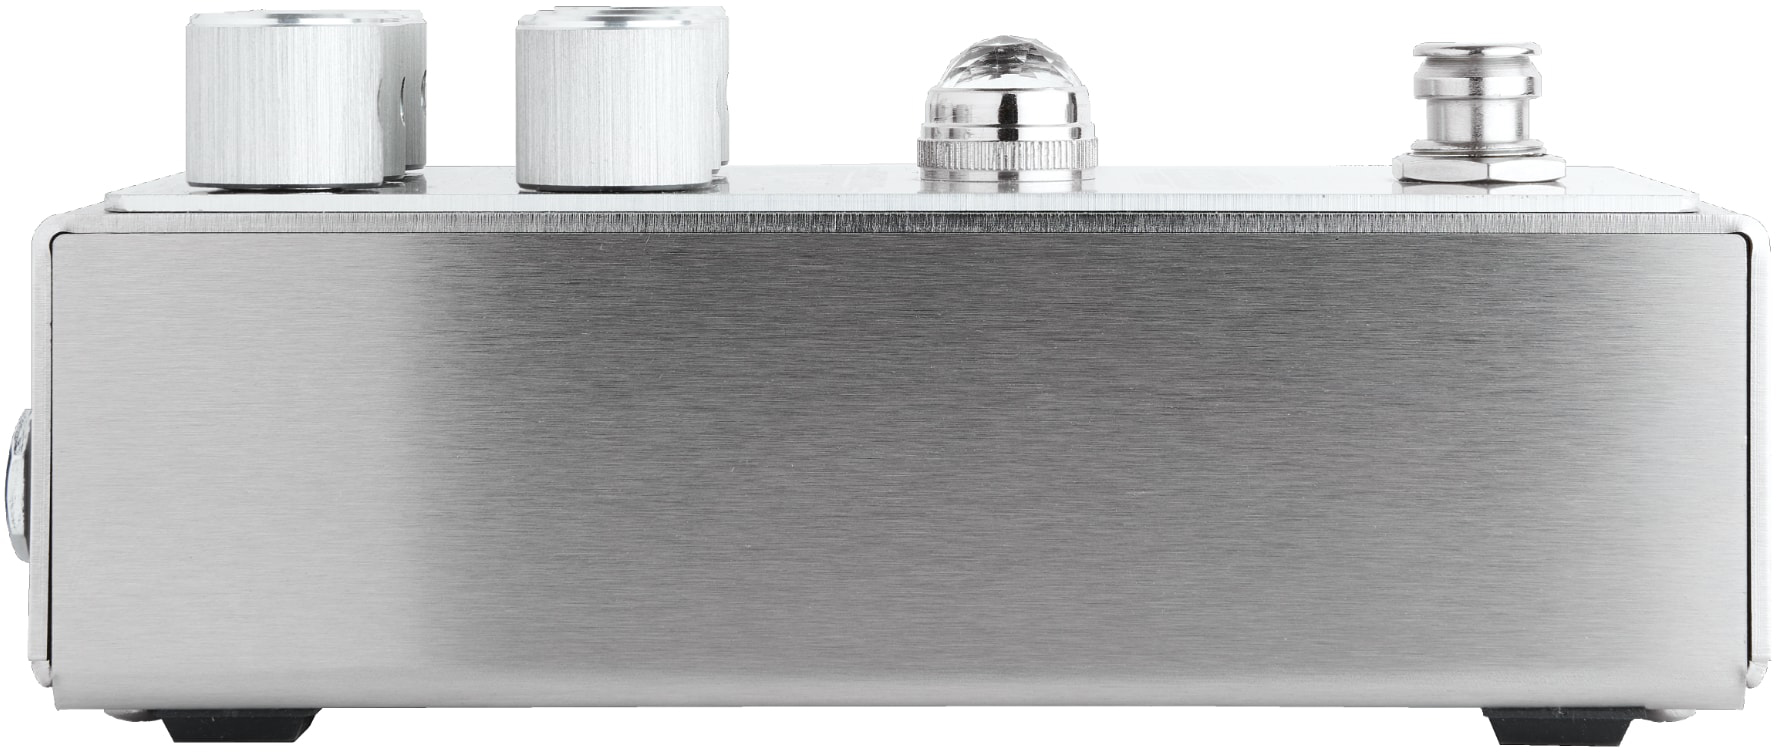 Origin Effects Sliderig Compact Deluxe Mk2 Laser Engraved Ltd - Kompressor/Sustain/Noise gate Effektpedal - Variation 1